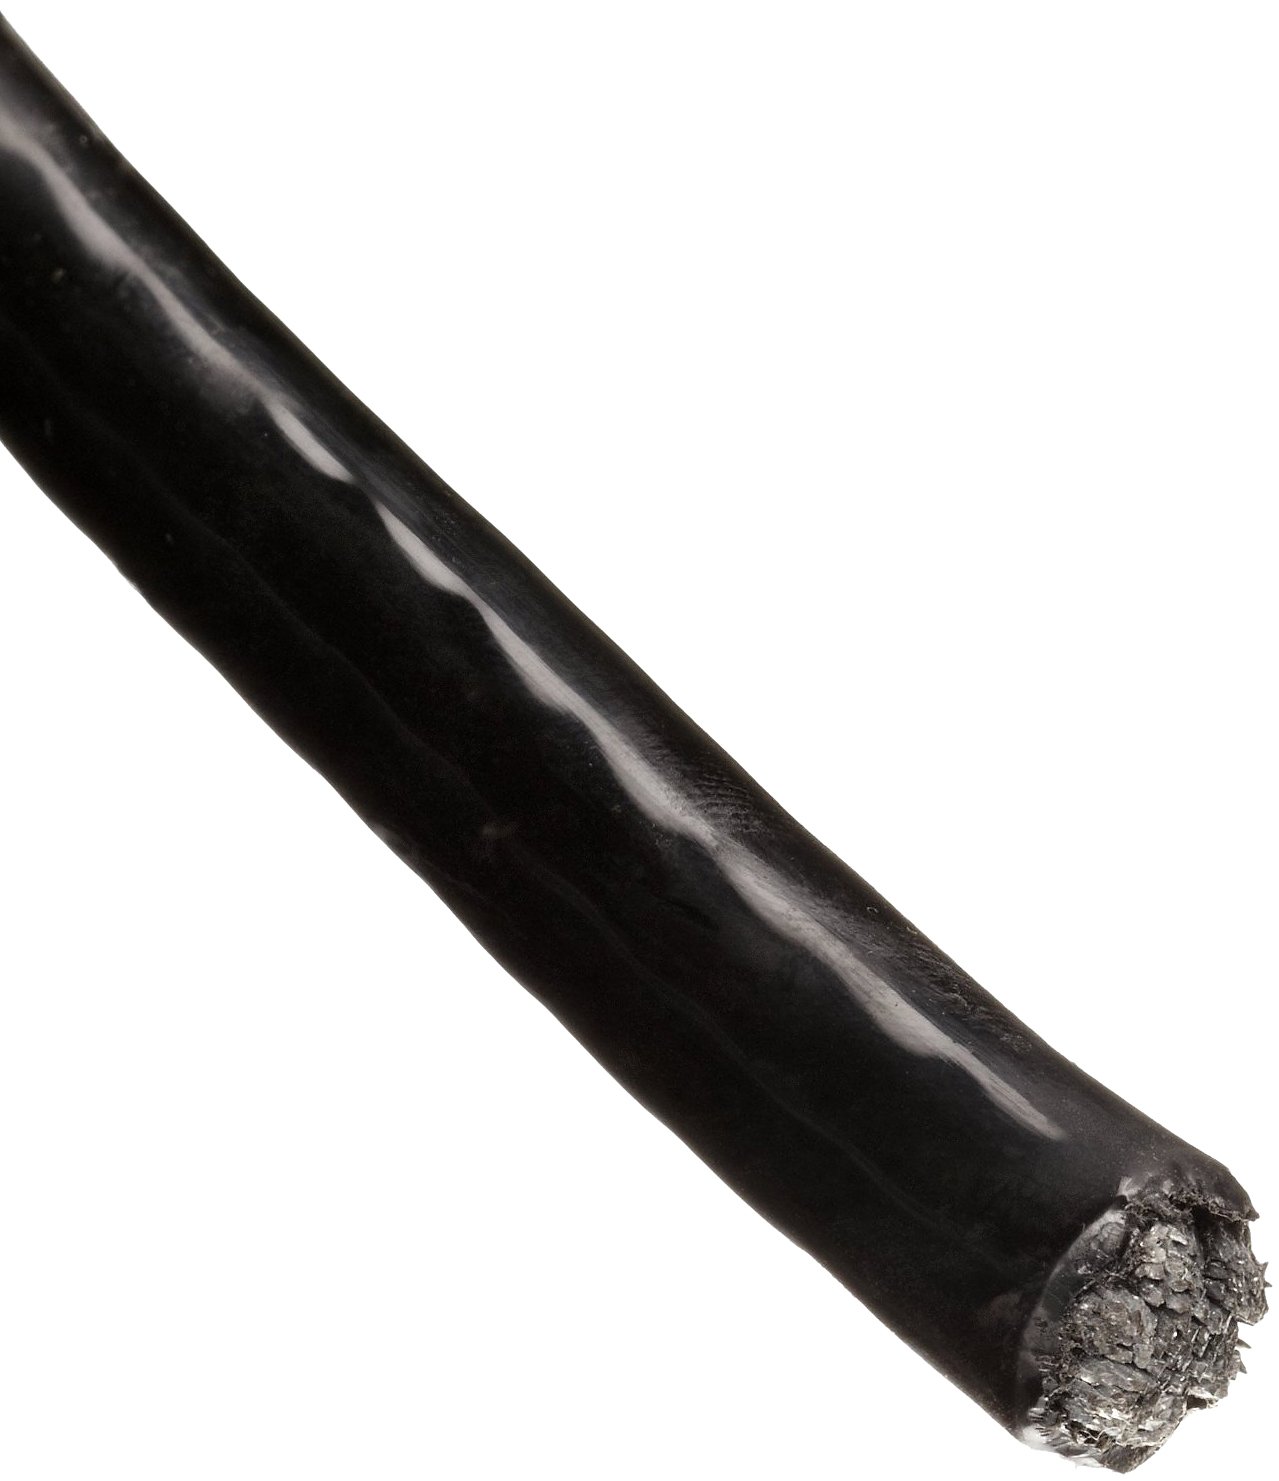 Трос в ПВХ оболочке 5 мм непрозрачный черный - фото